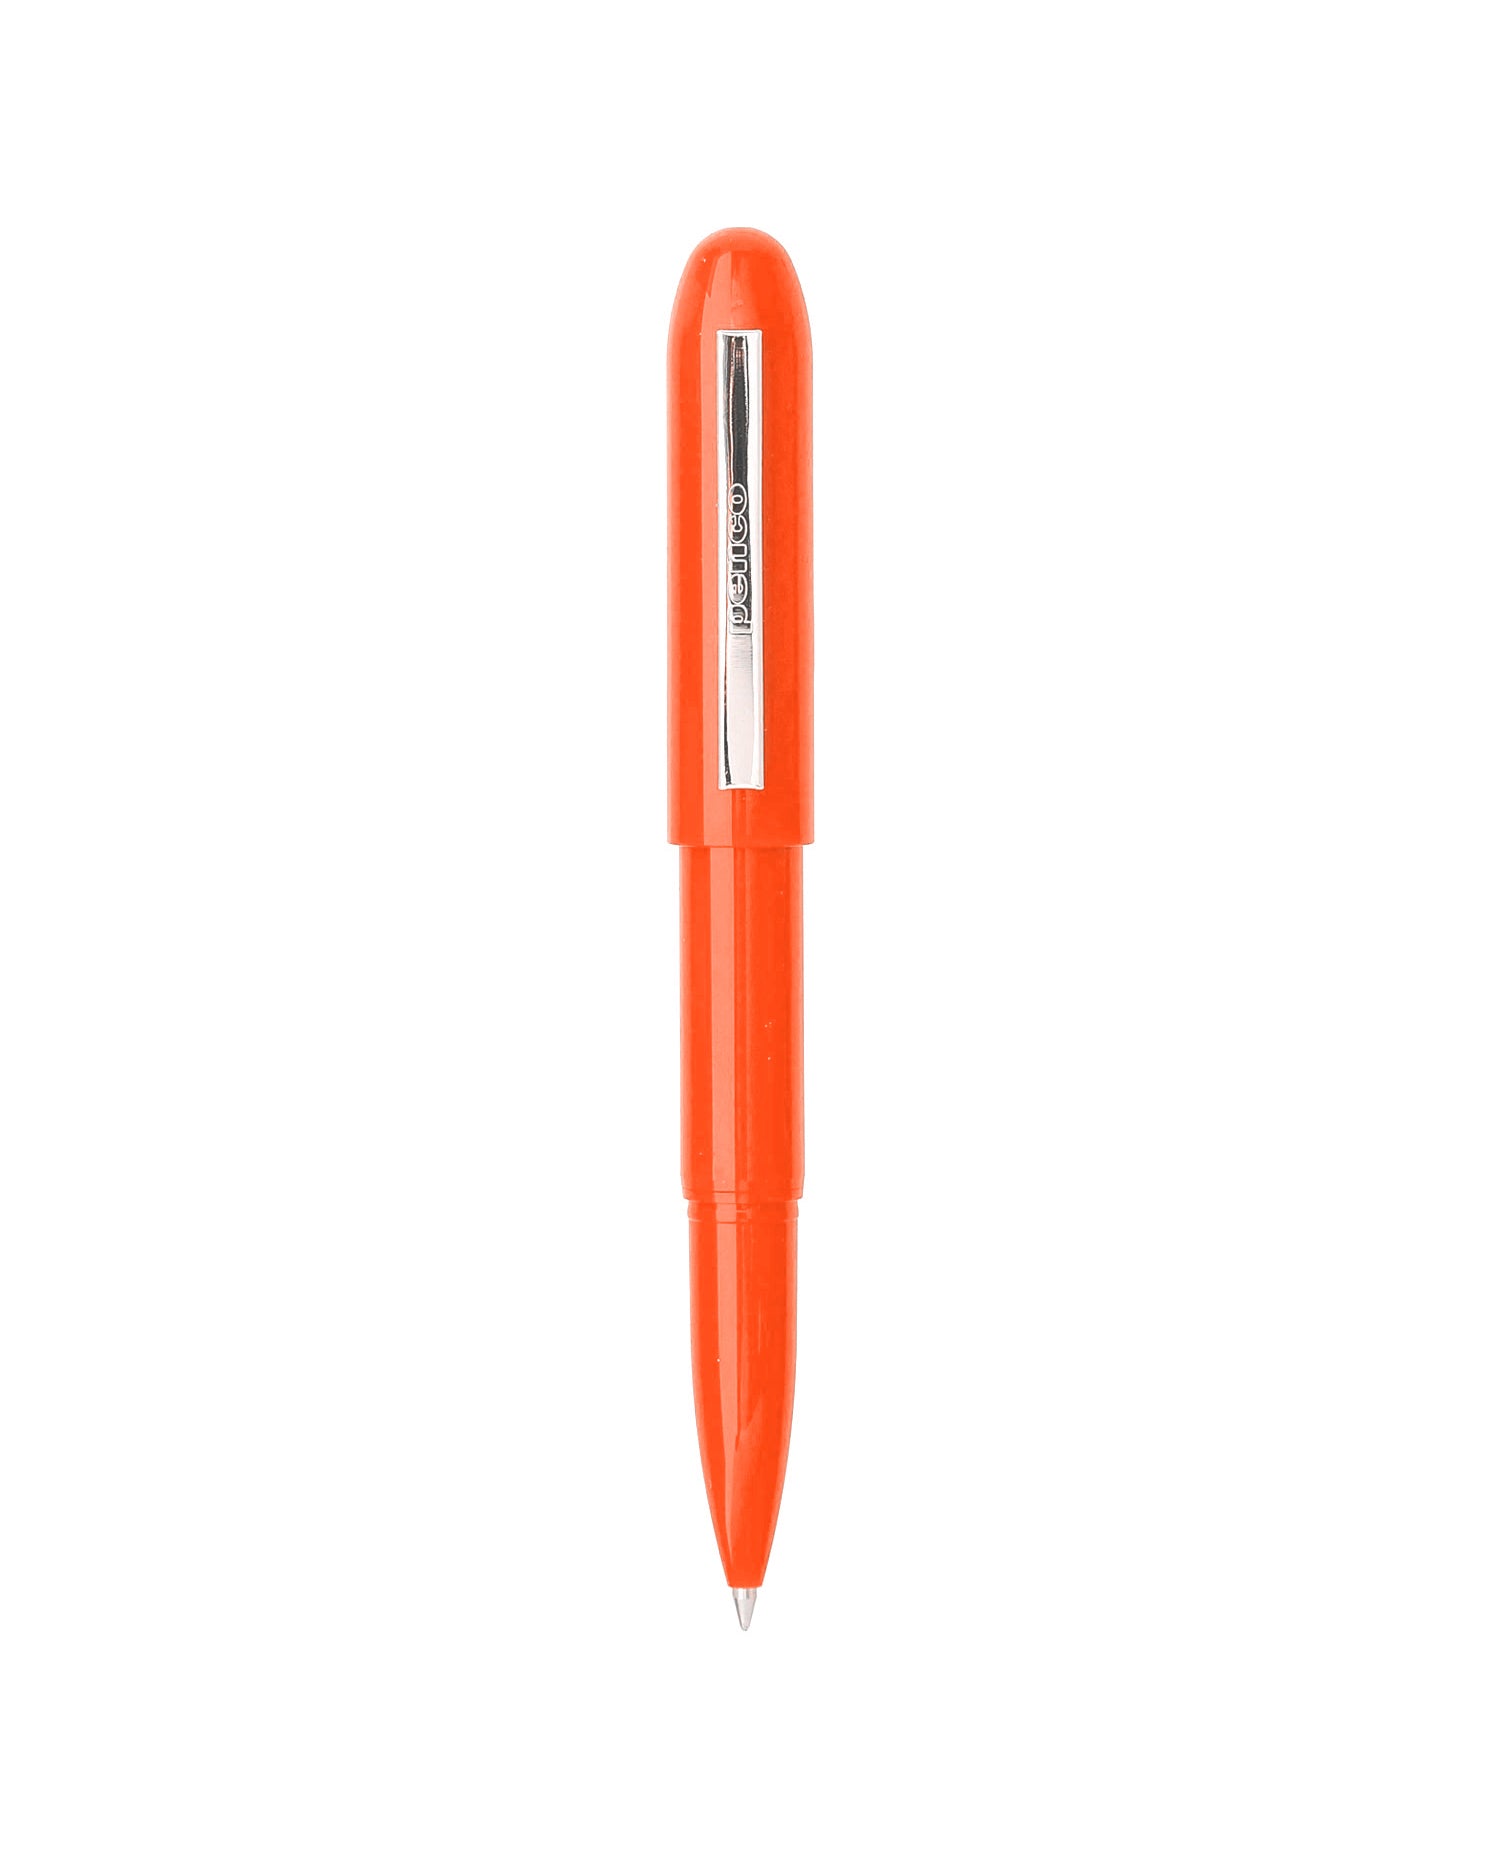 Orange bullet pen, plastic, Penco brand.